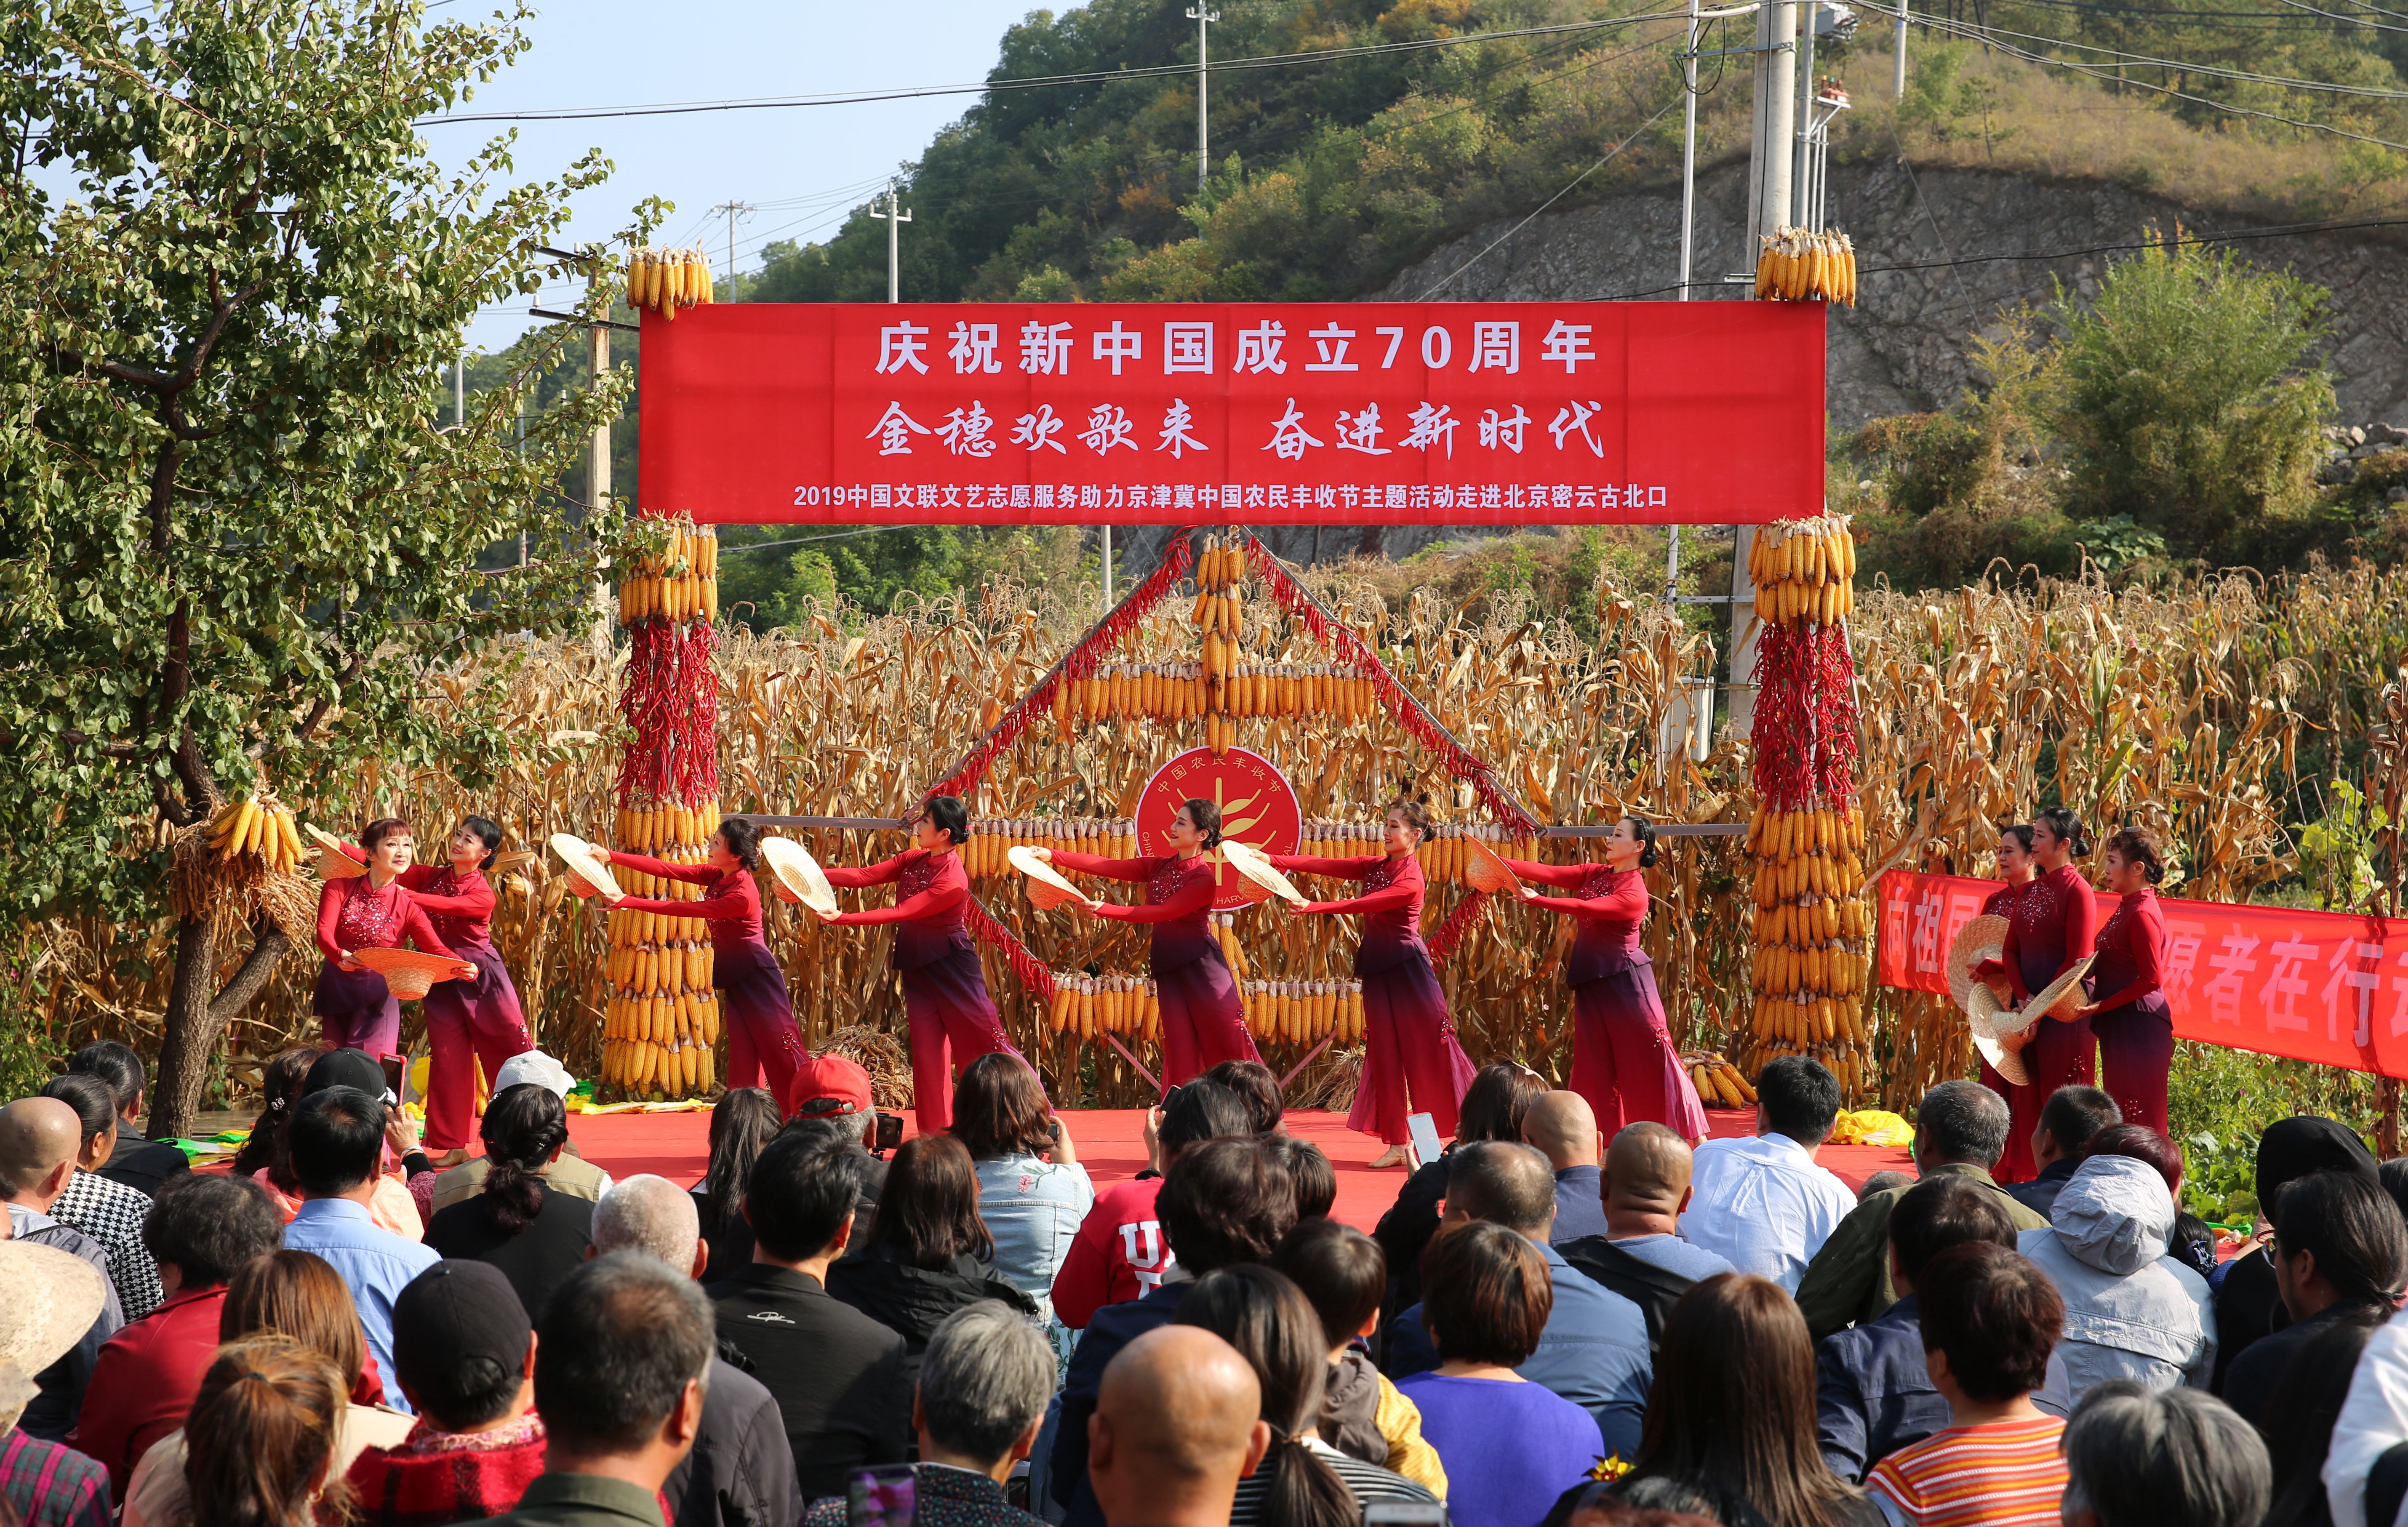 古北口镇丰收节活动开幕传统庙会将持续至本月14号